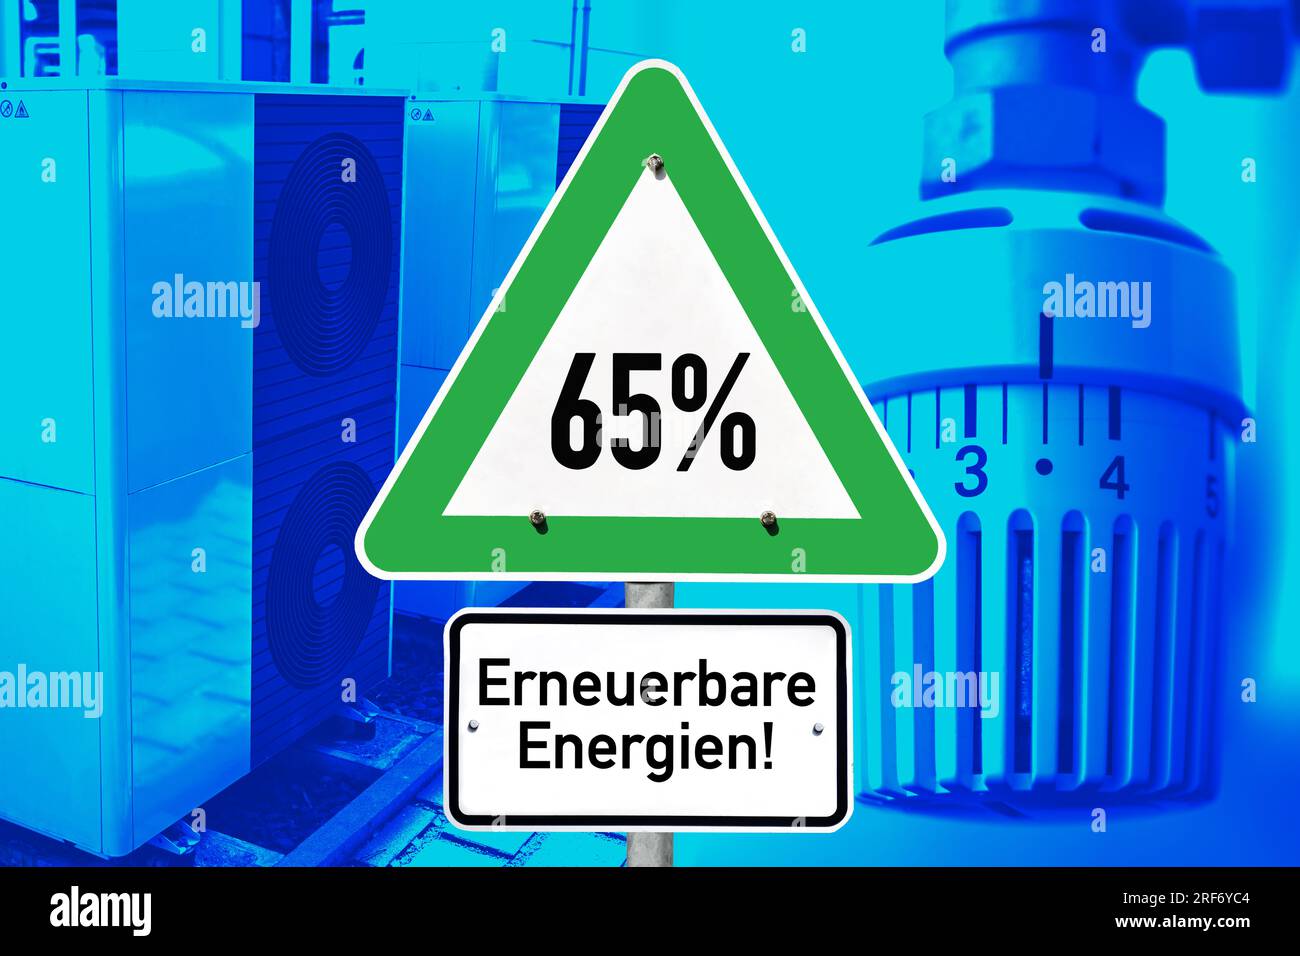 FOTOMONTAGE, Schild mit Aufschrift 65% erneuerbare Energien, Wärmepumpe und Heizungsthermostat Stock Photo